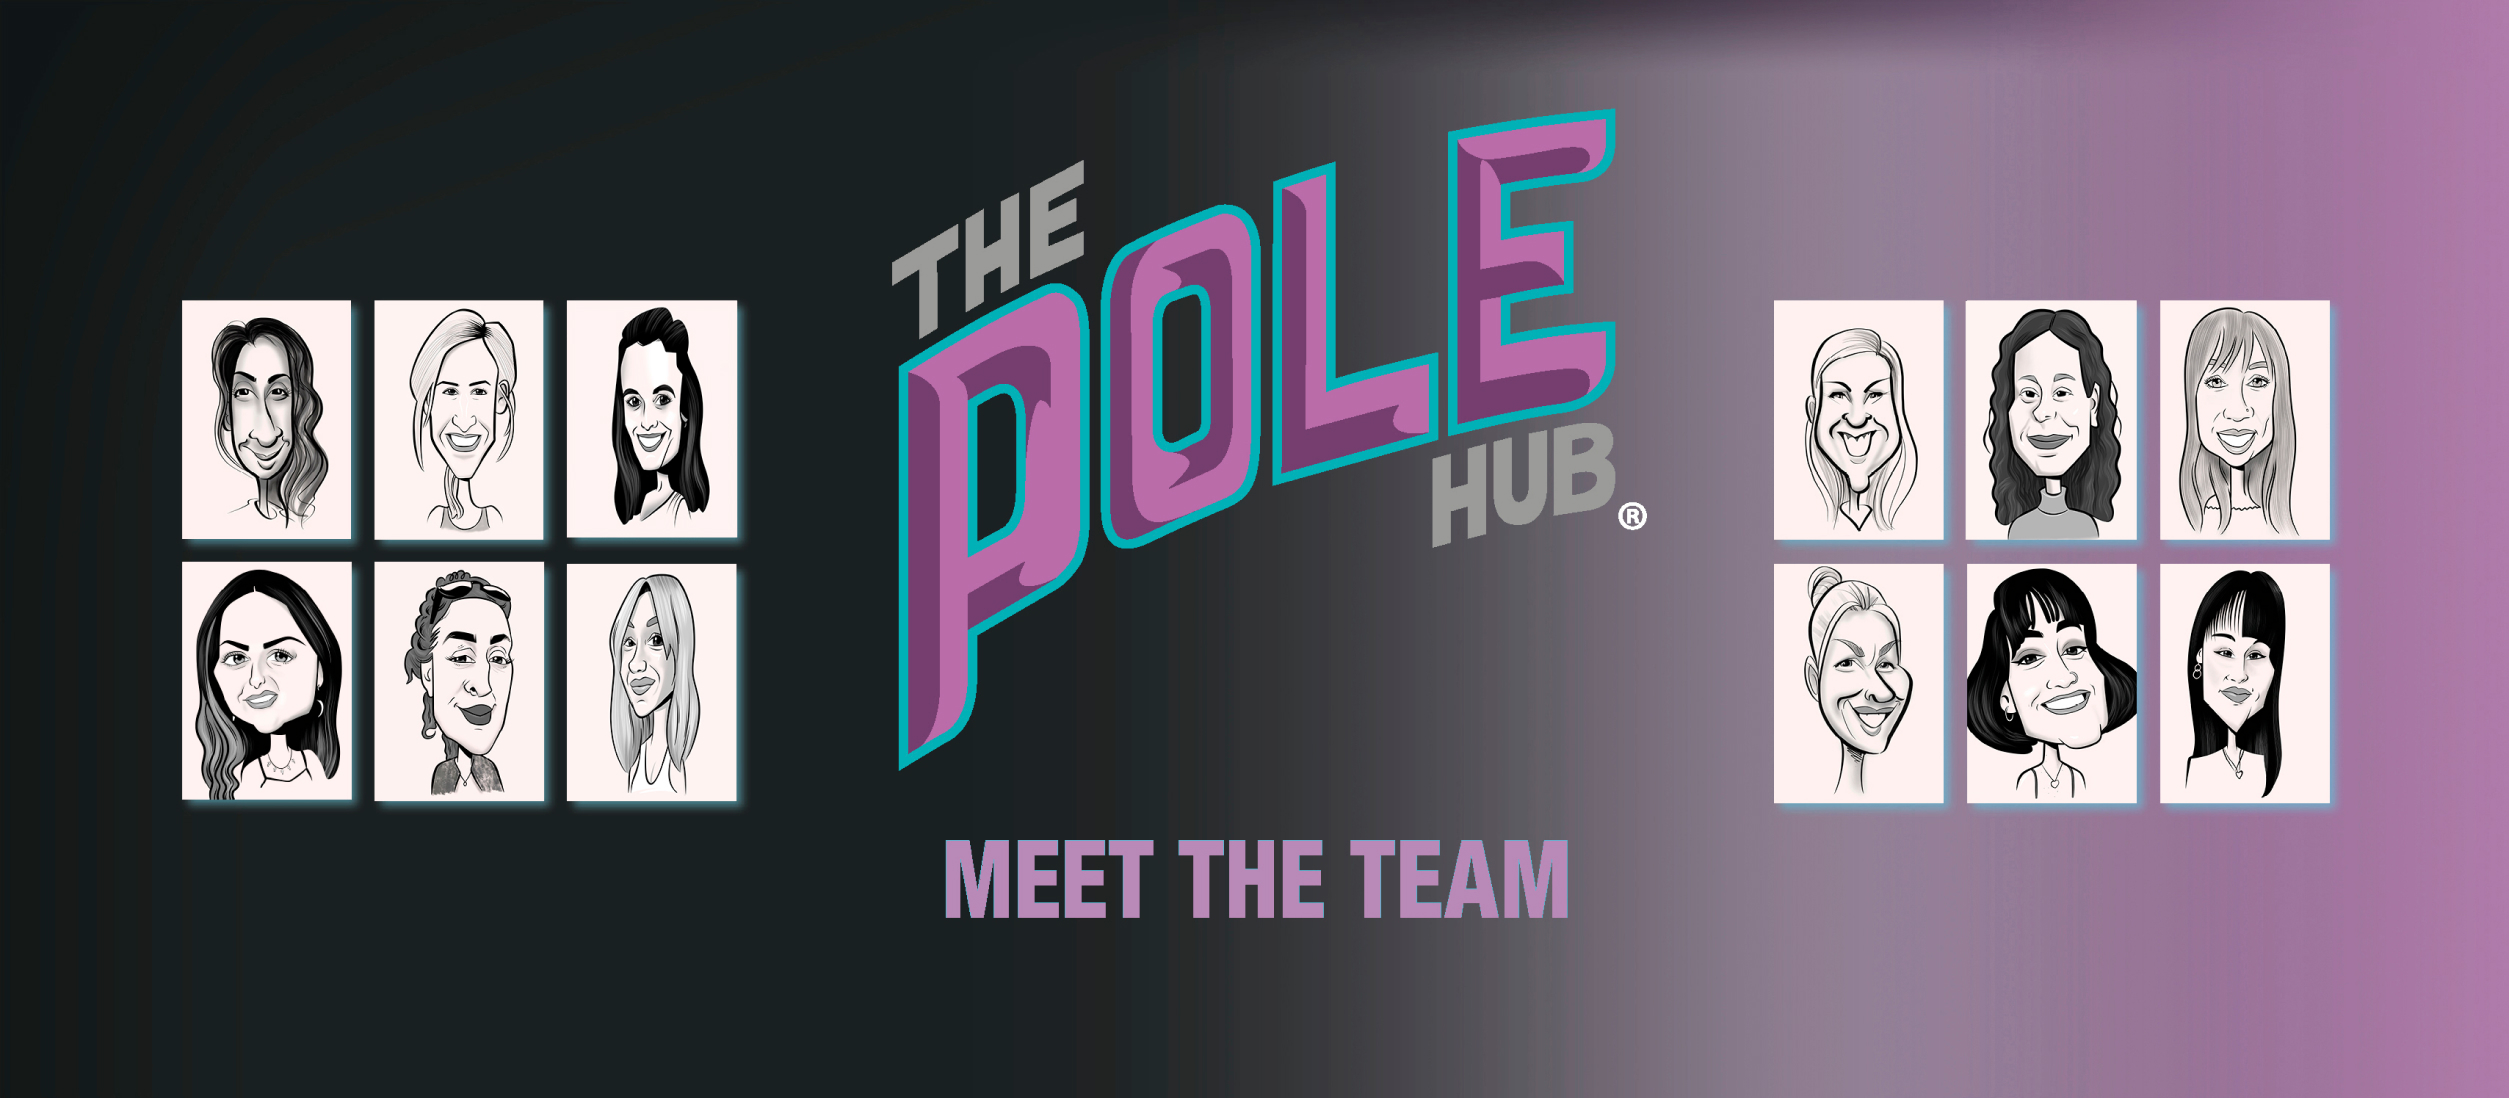 The Pole Hub - Meet the team